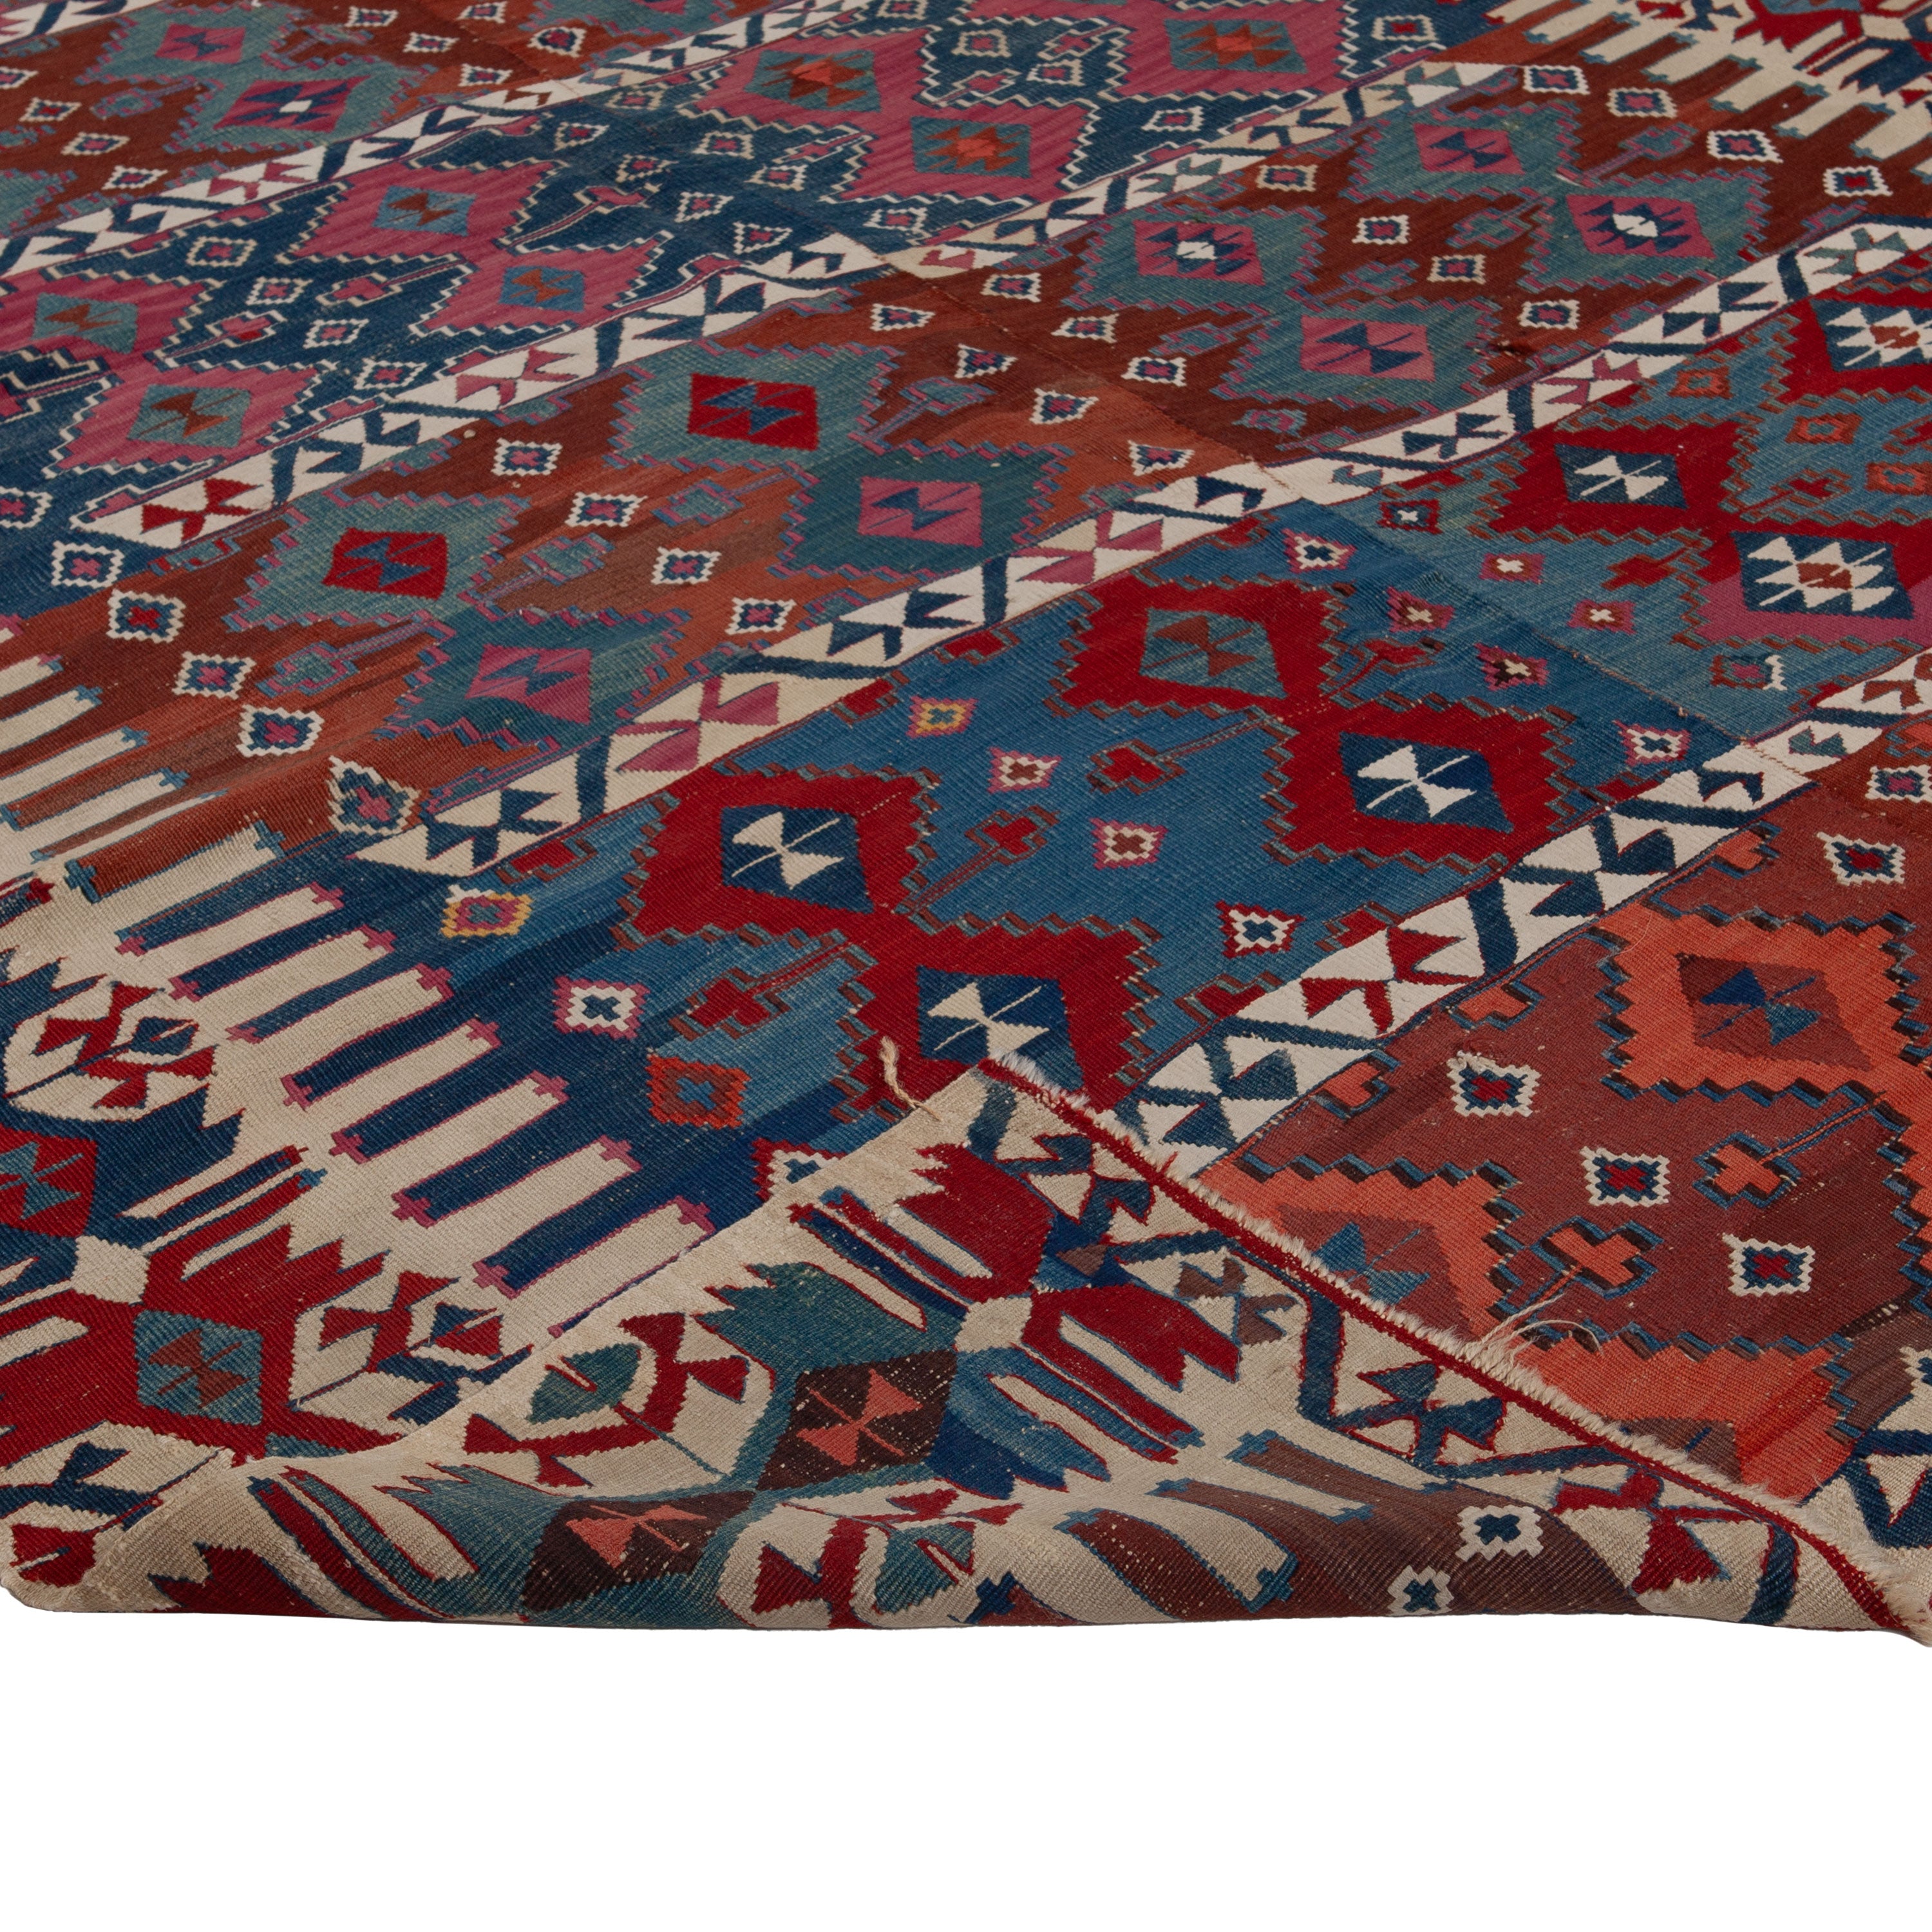 Vintage Flatweave Wool Turkish Kilim - 5'6" x 8'11"